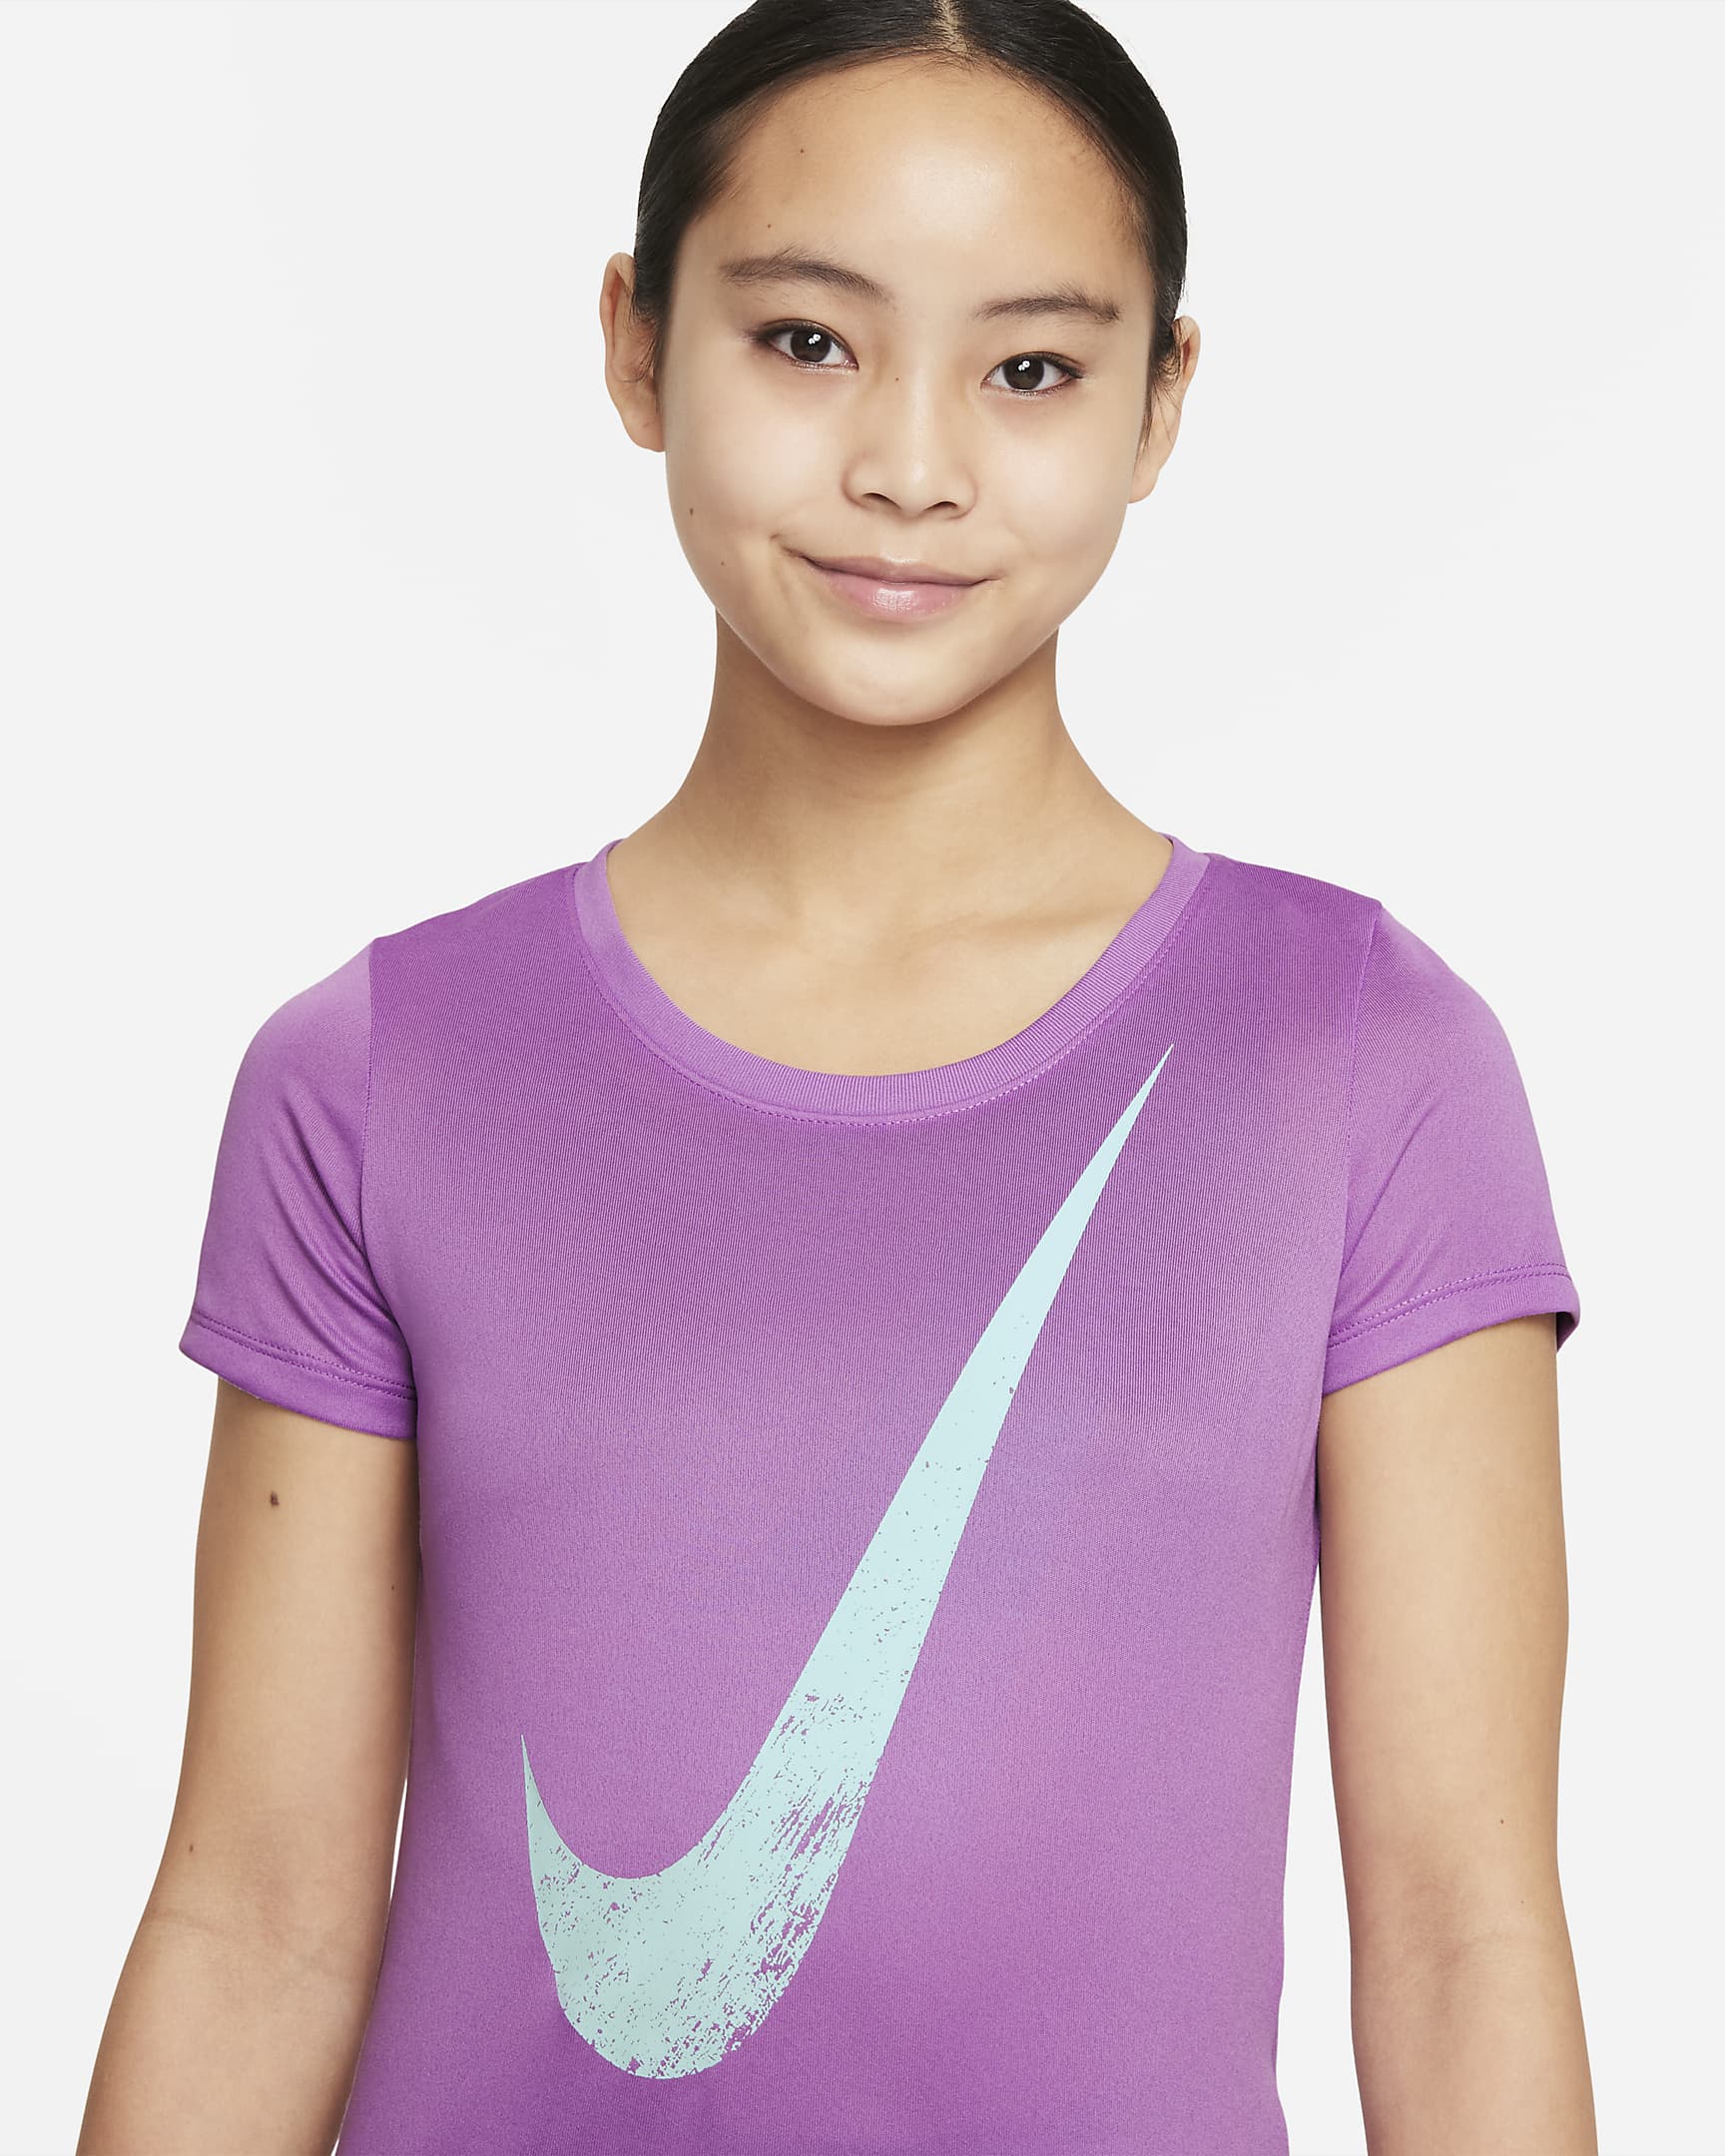 Nike Big Kids' (Girls') T-Shirt. Nike.com